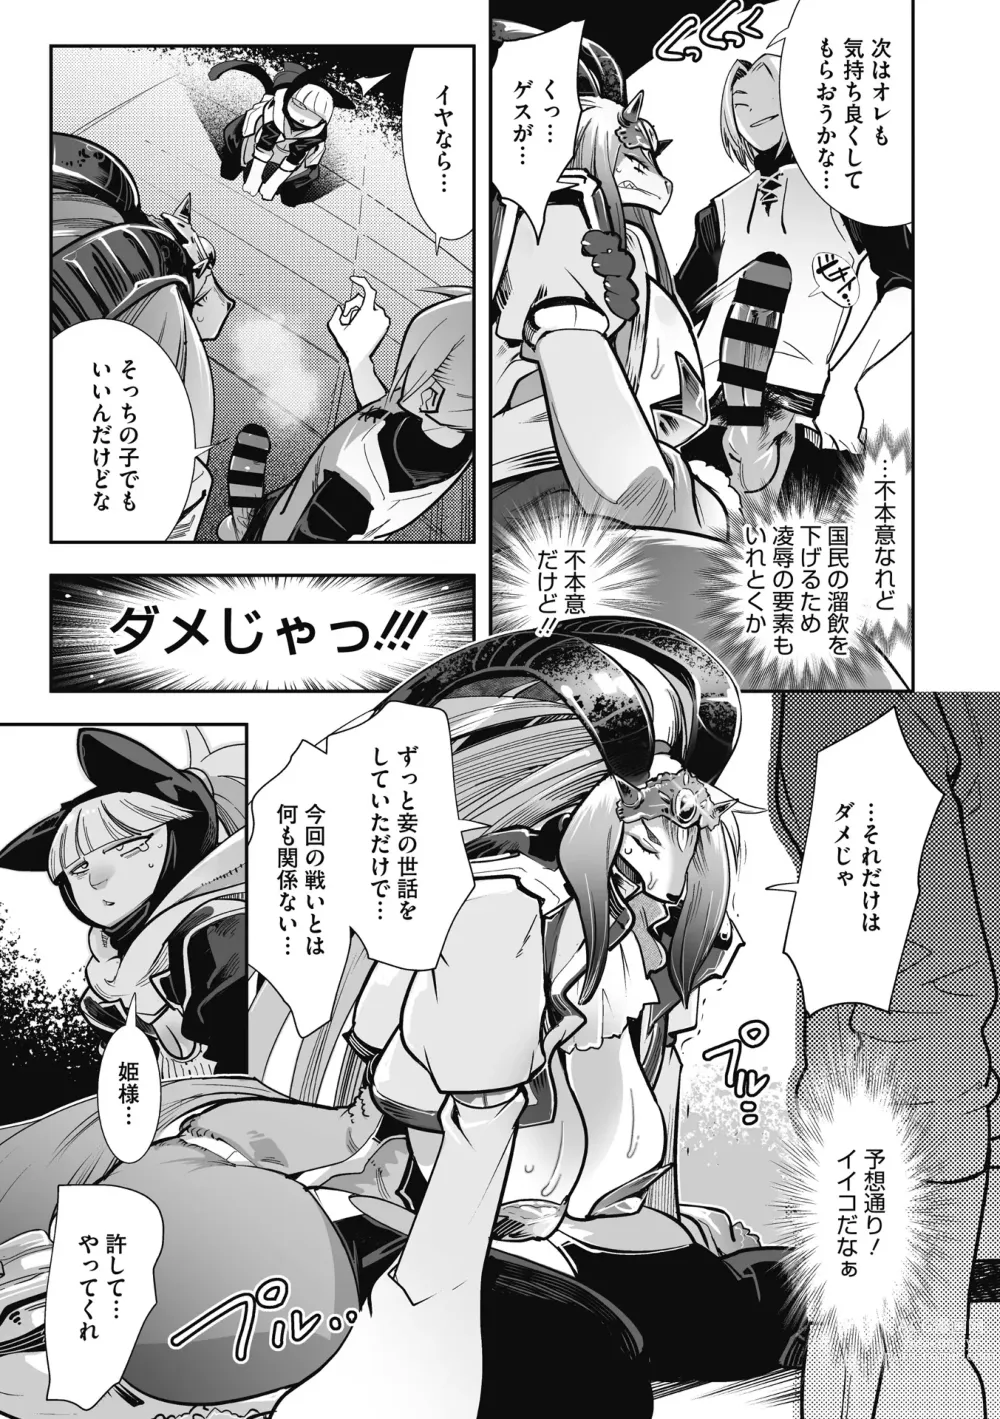 Page 17 of manga Kemono to Koishite Nani ga Warui!